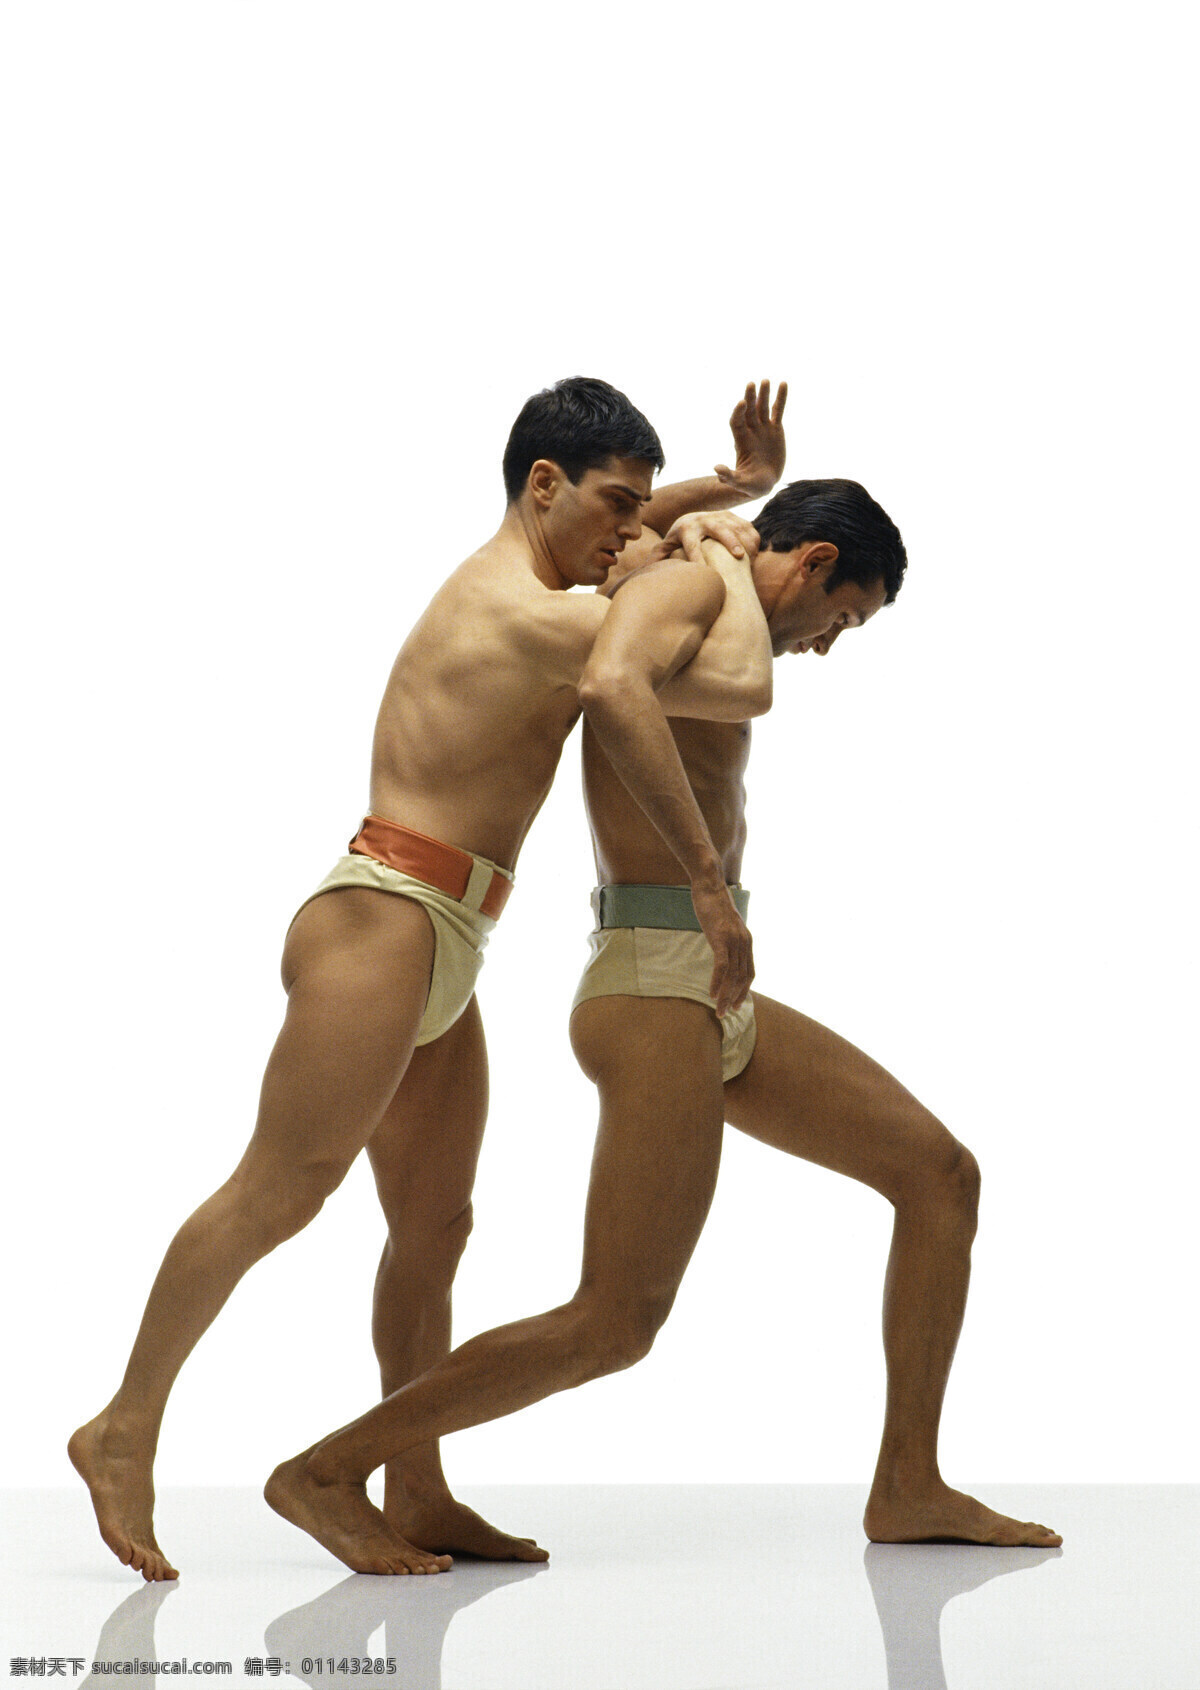 正在 摔跤 外国 男性 运动员 古代奥运会 奥林匹克 体育运动 体育项目 外国男性 搏击 力量 肌肉男 摄影图 高清图片 生活百科